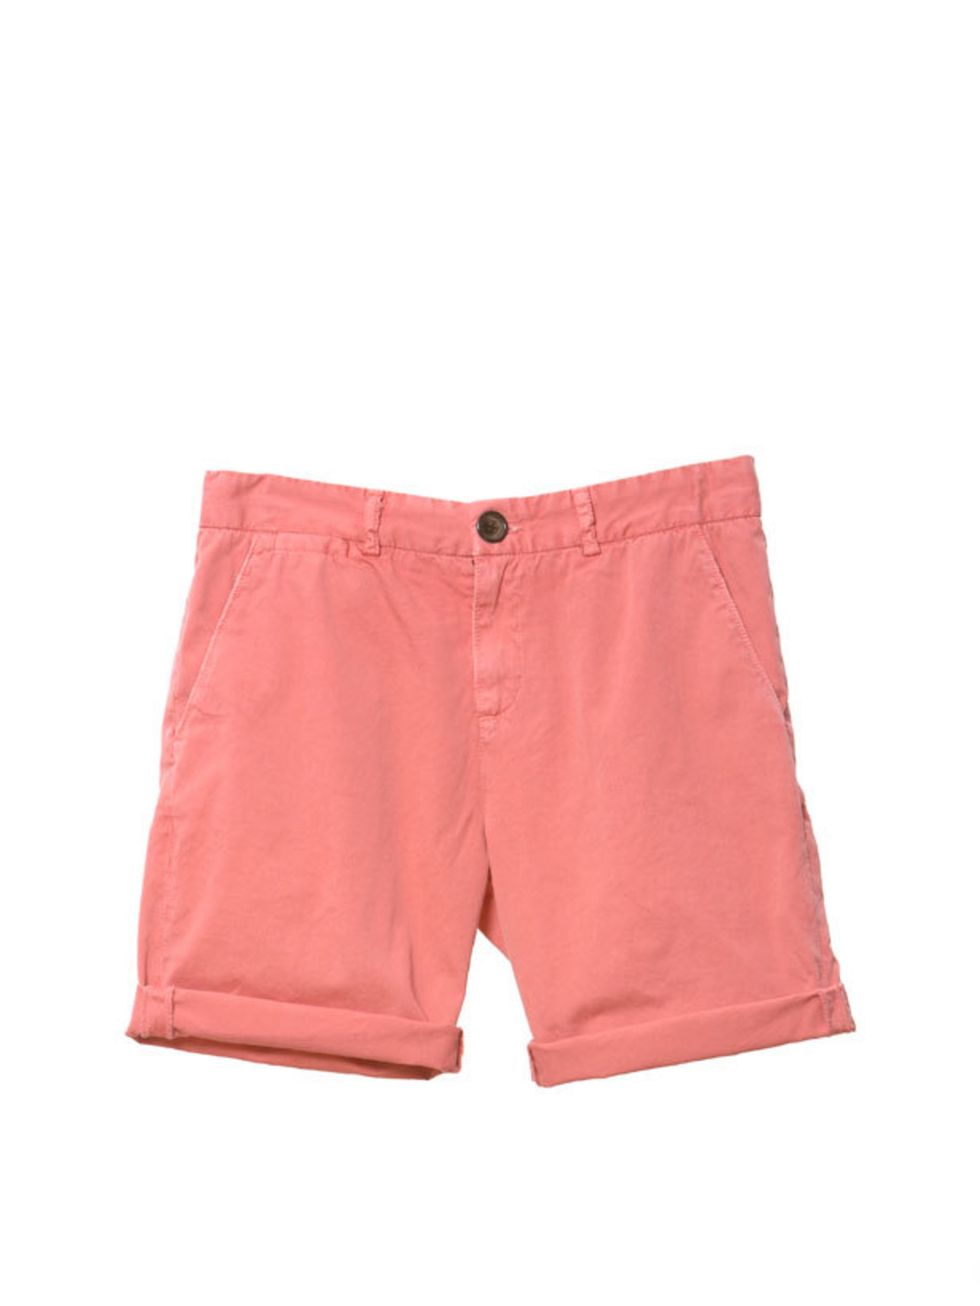 <p>Red denim shorts, £145, by Current Elliott at <a href="http://www.my-wardrobe.com/current-elliott.html">My-Wardrobe</a> </p>